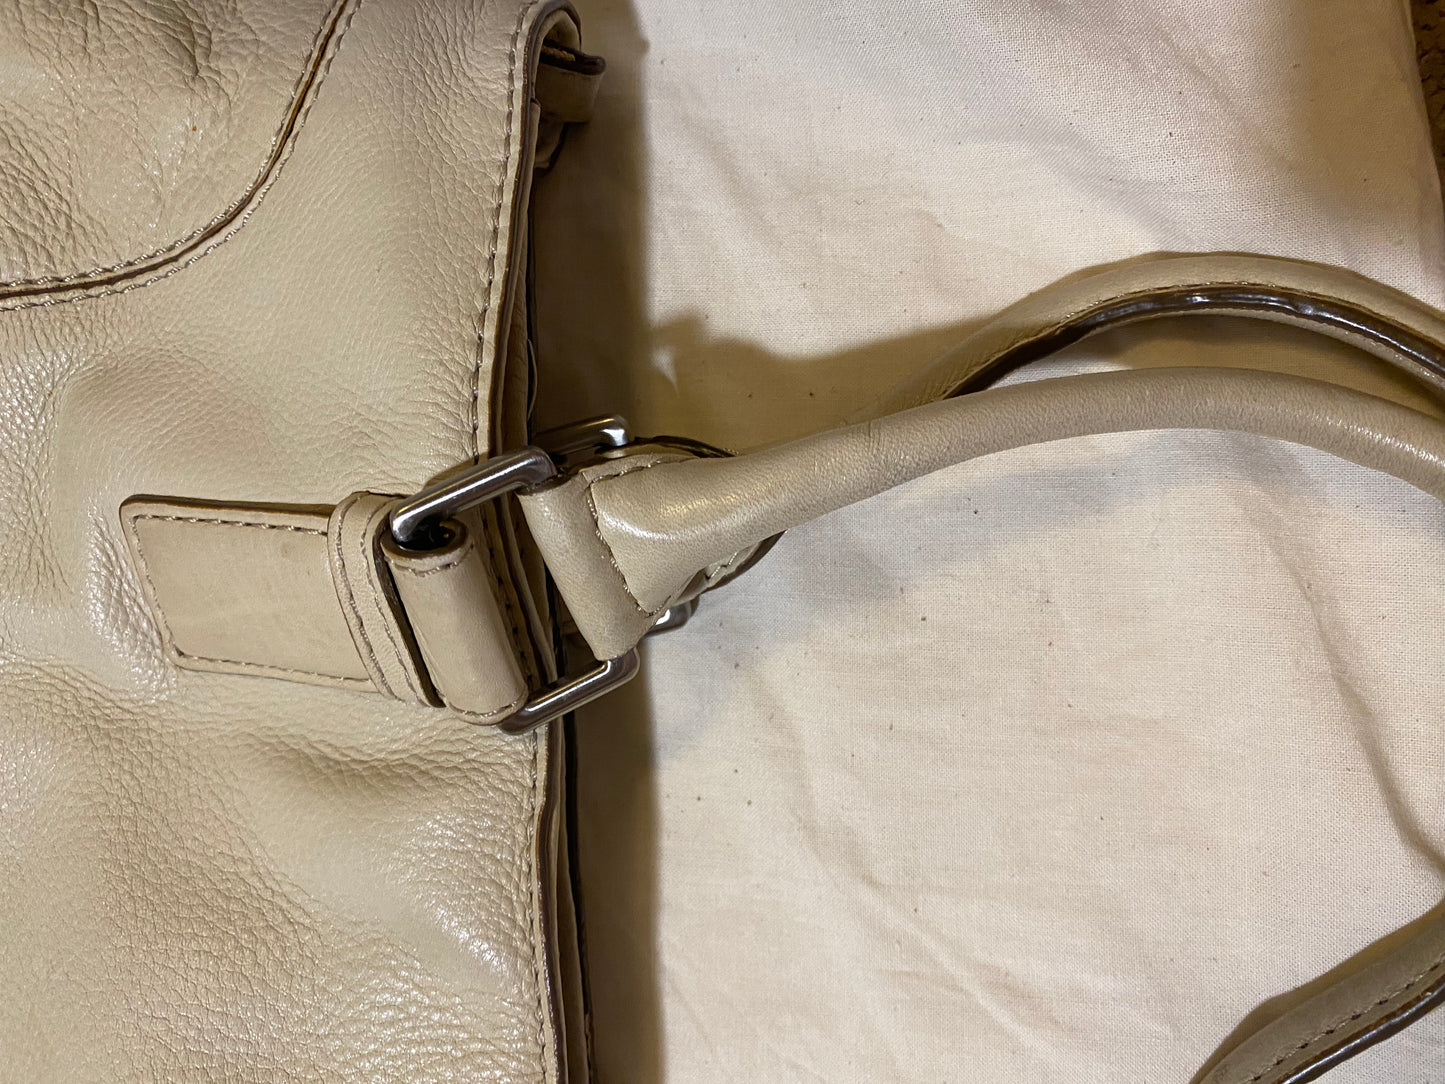 Used Bag: Ivory Michael Kors Bag